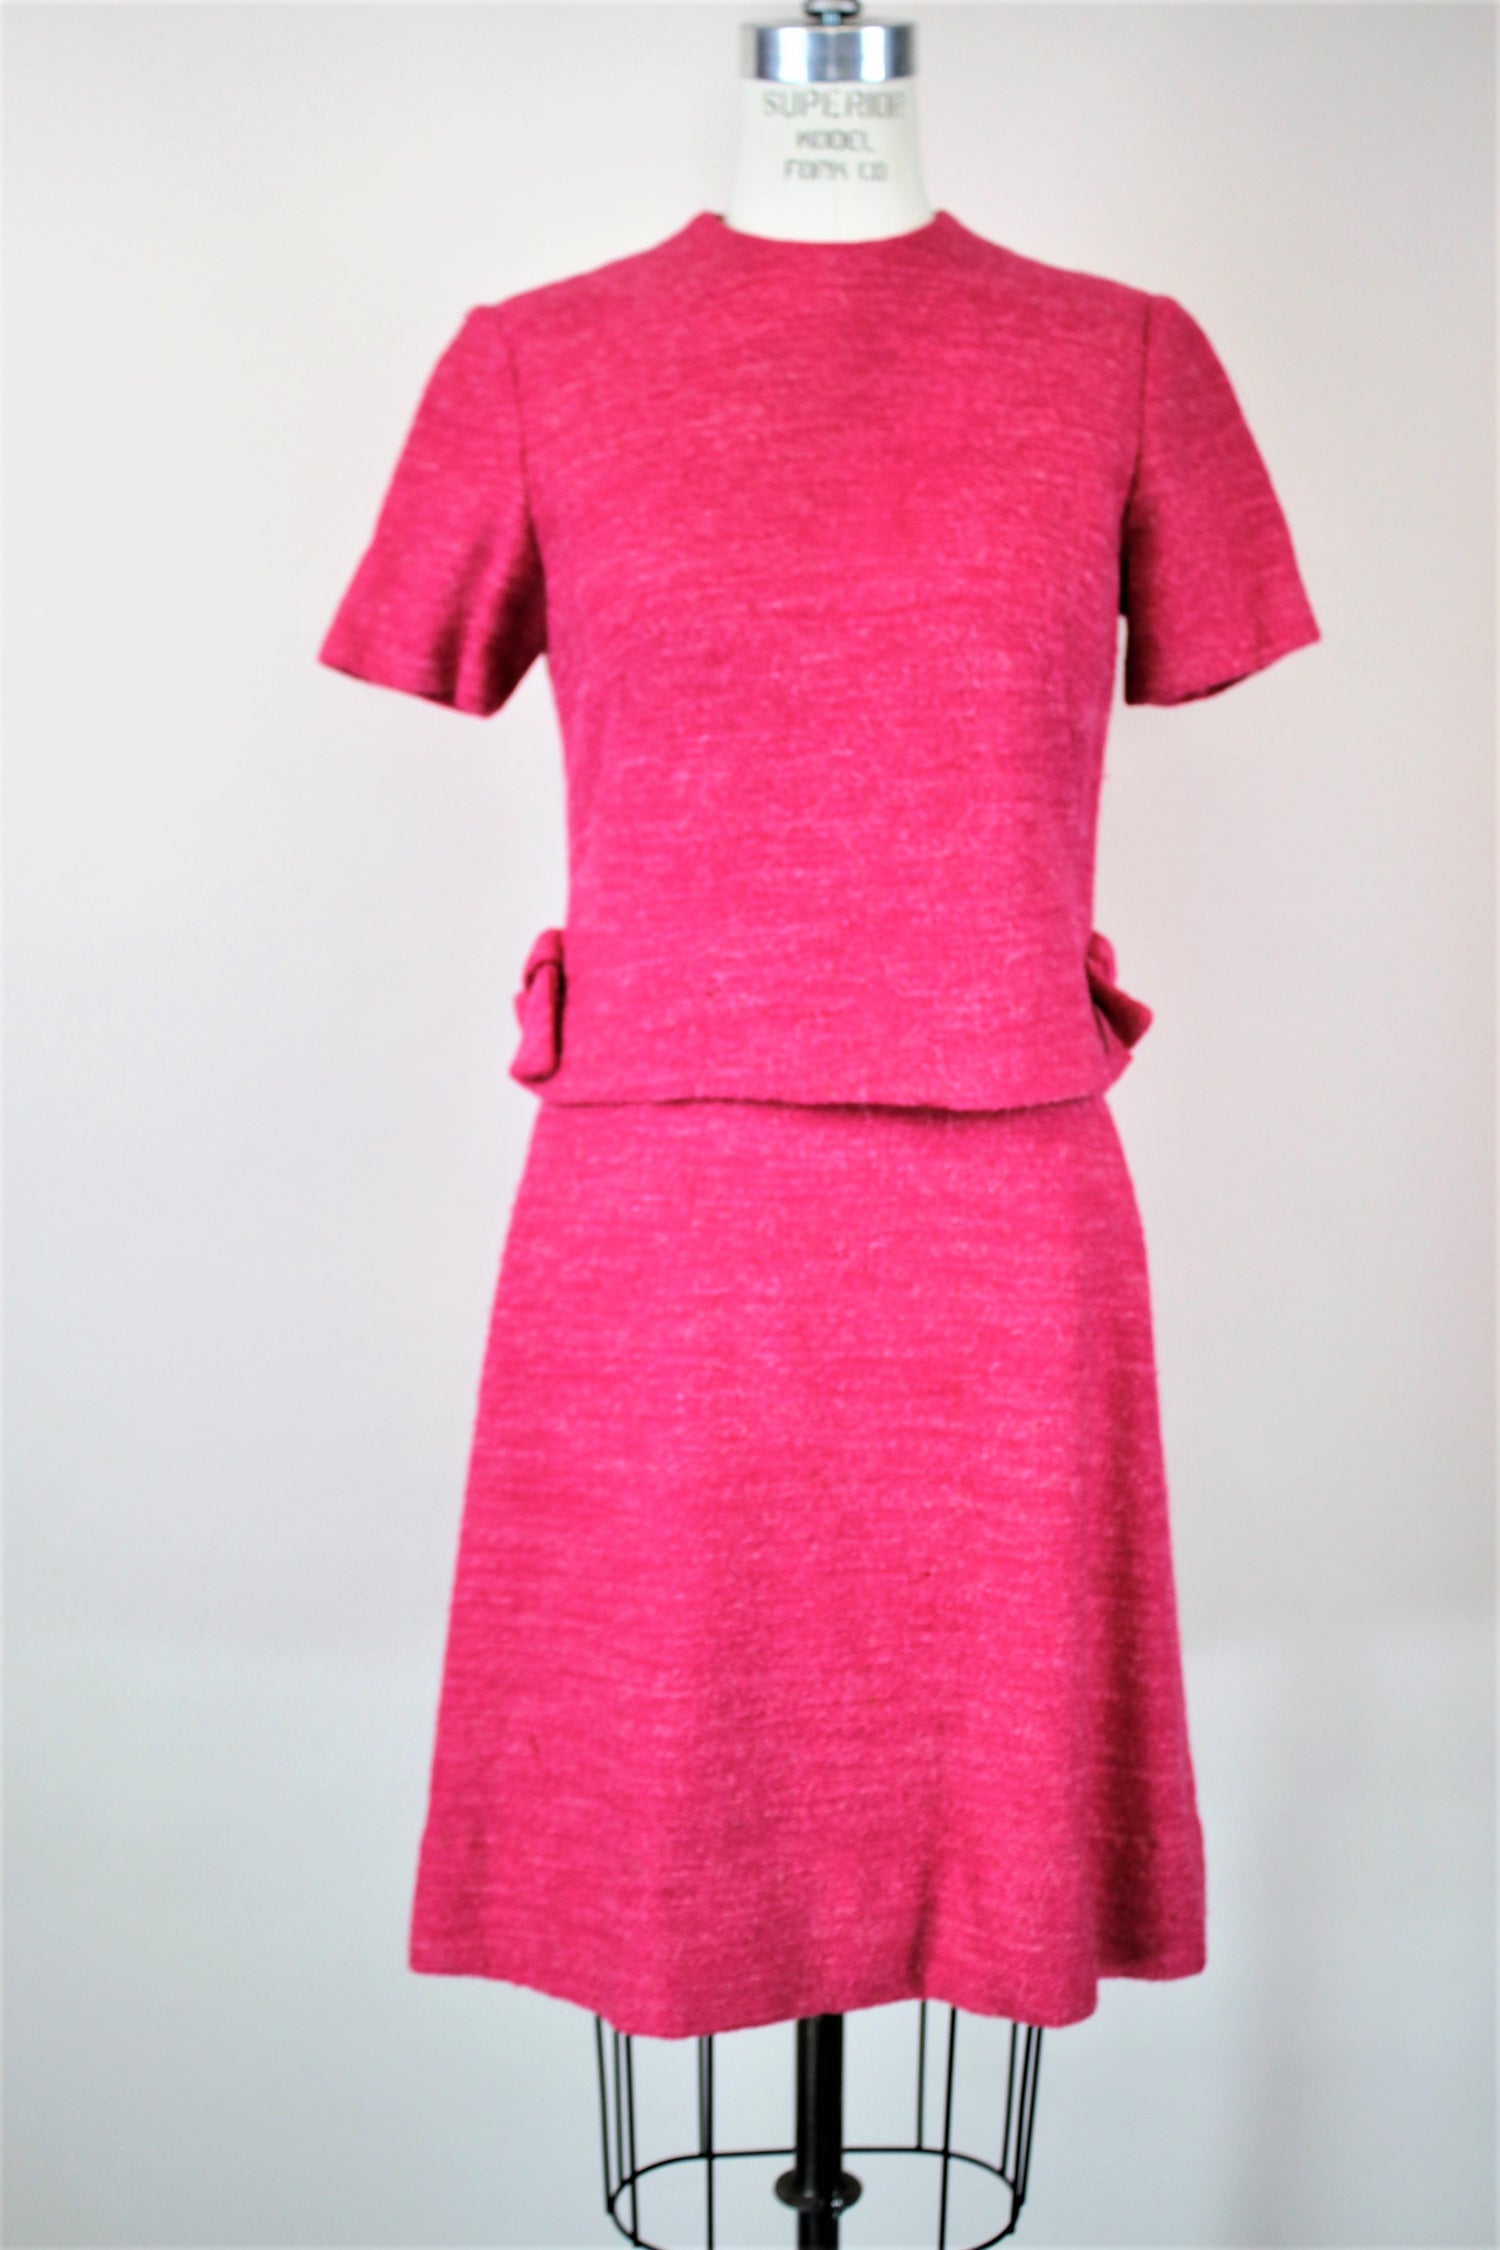 Vintage 1960s Pink Wool Tweed Dress With Top